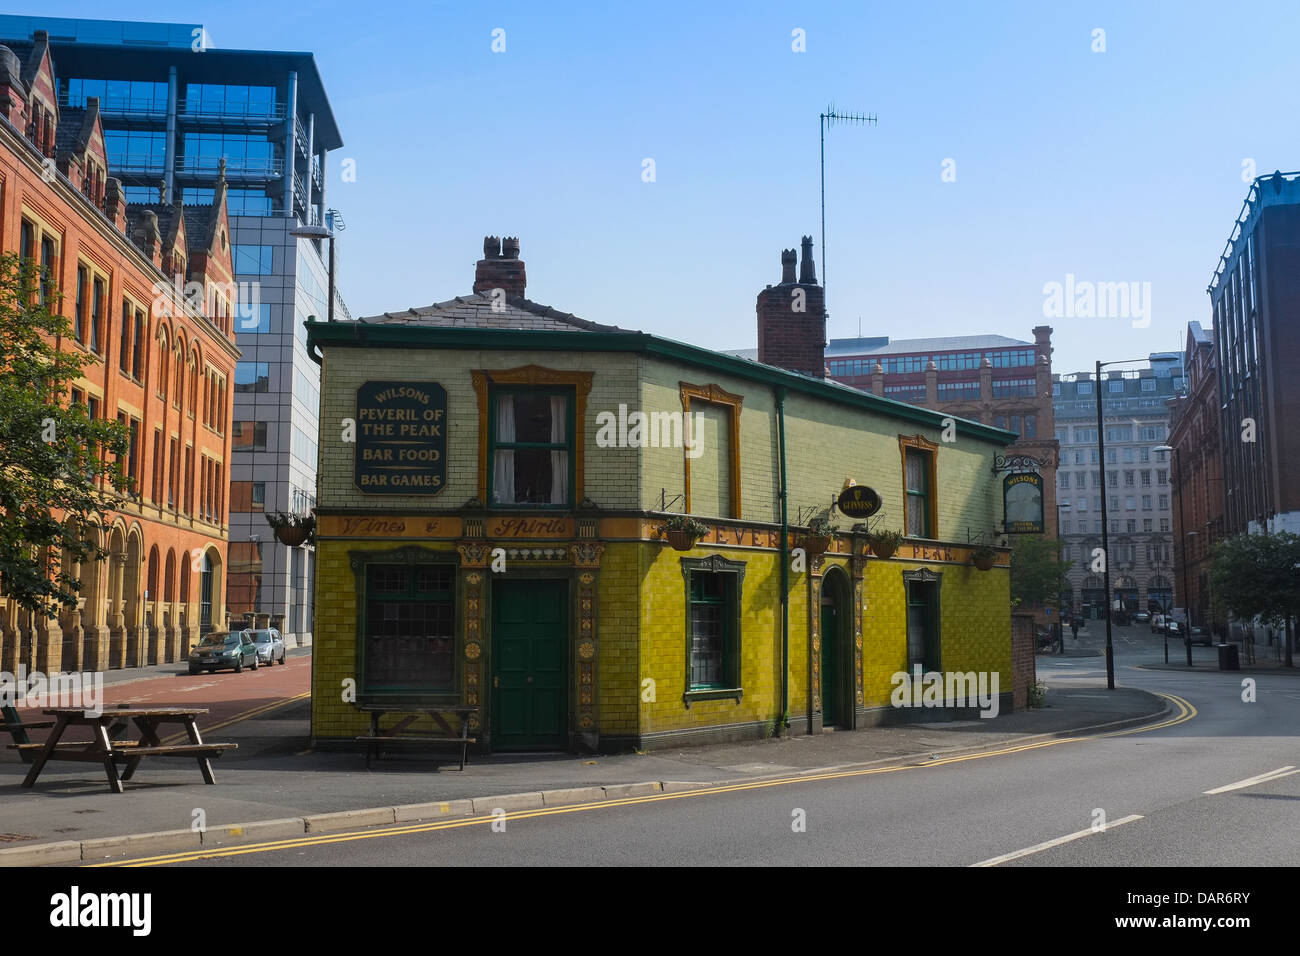 En Angleterre, Manchester, vue en direction de Peveril Of The Peak public house Banque D'Images